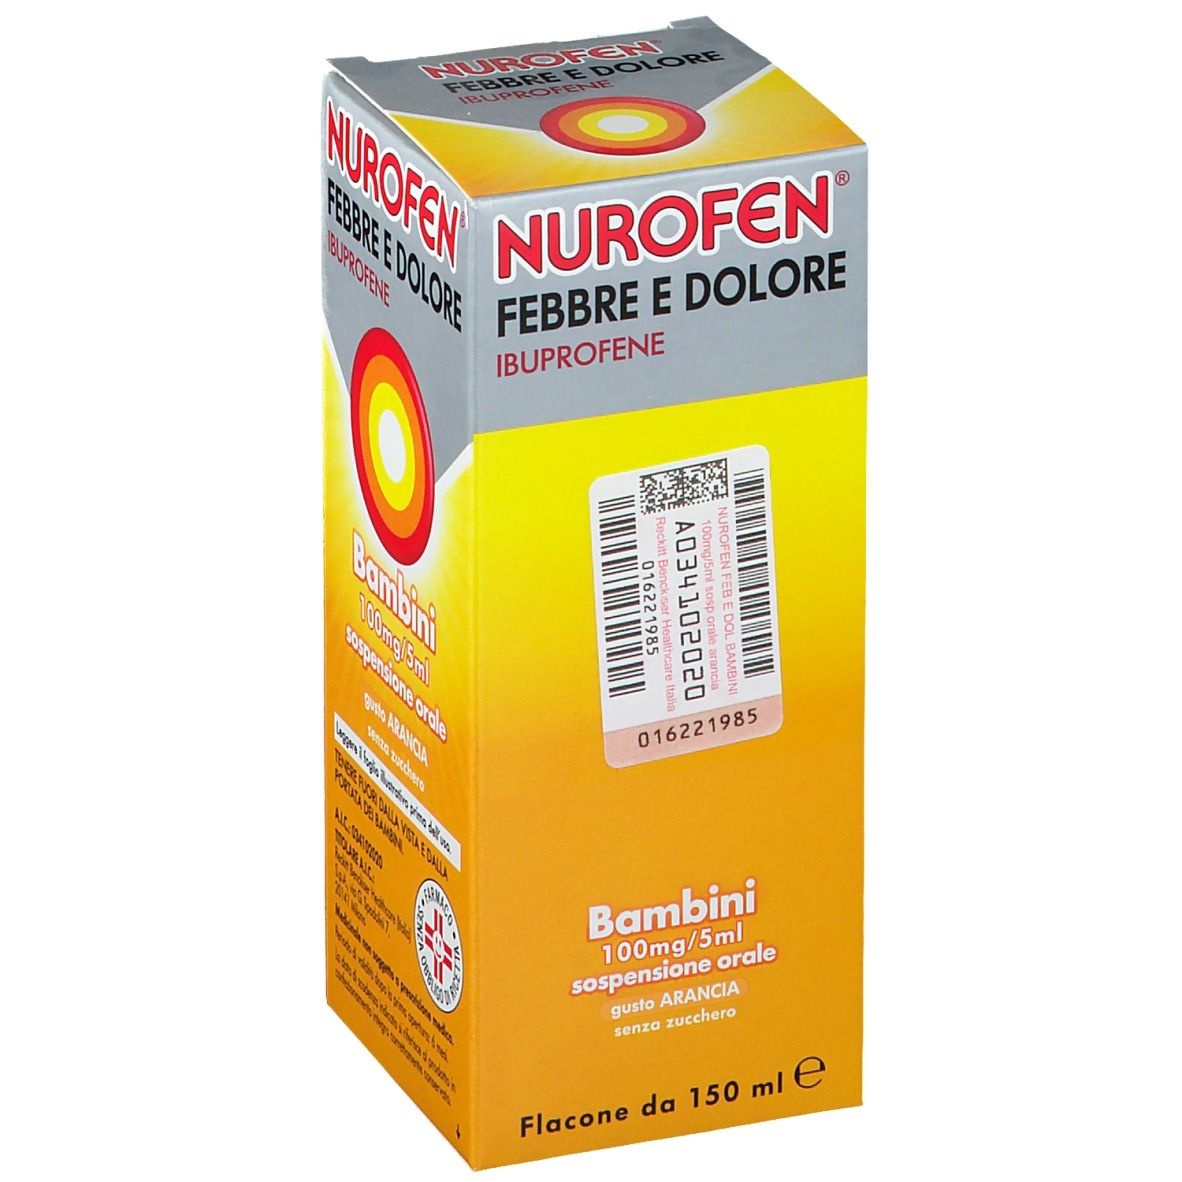 Nurofen® Febbre e Dolore Bambini 100 mg/ 5 ml Gusto Arancia